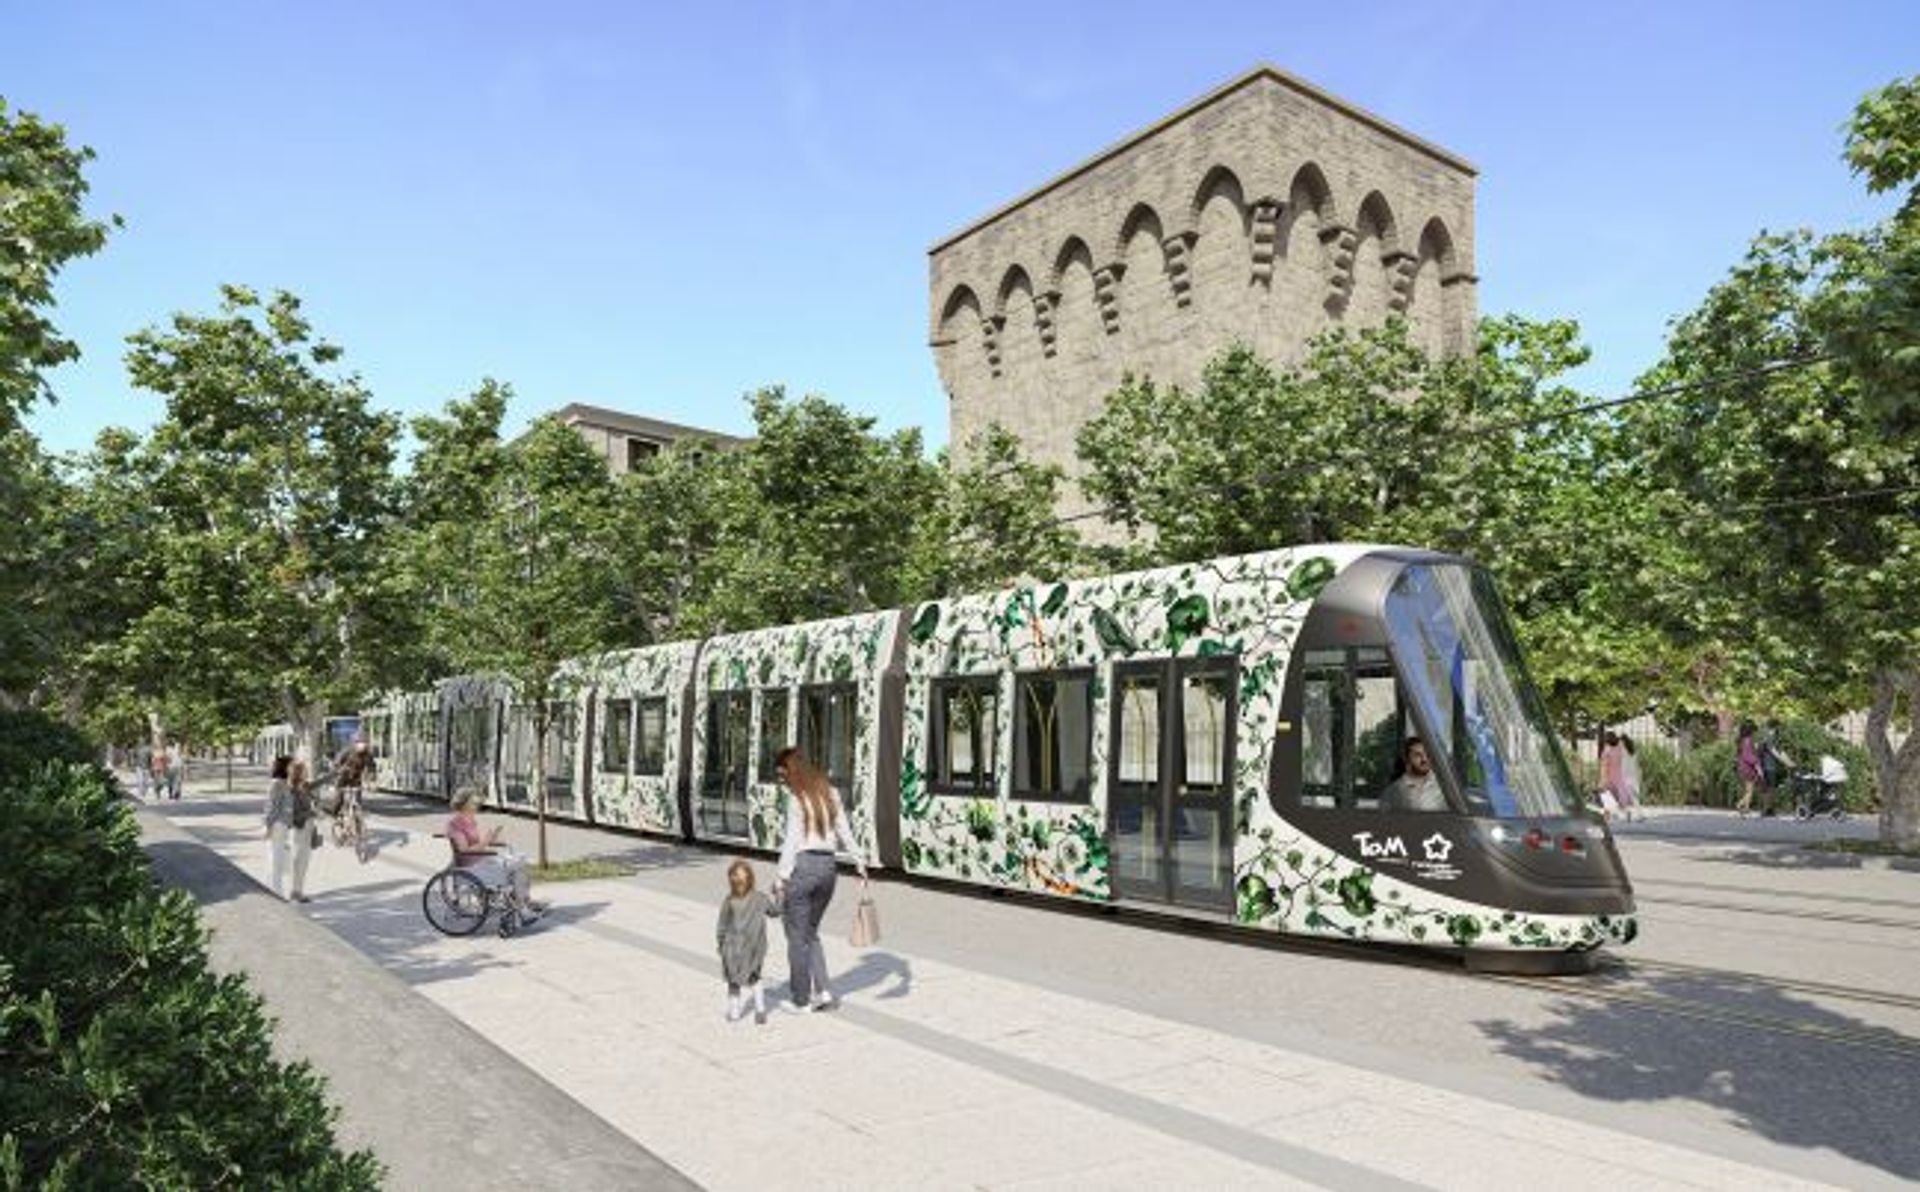 La ligne 5 du métro de Montpellier sera mise en service en 2025.

© Sketchpixel